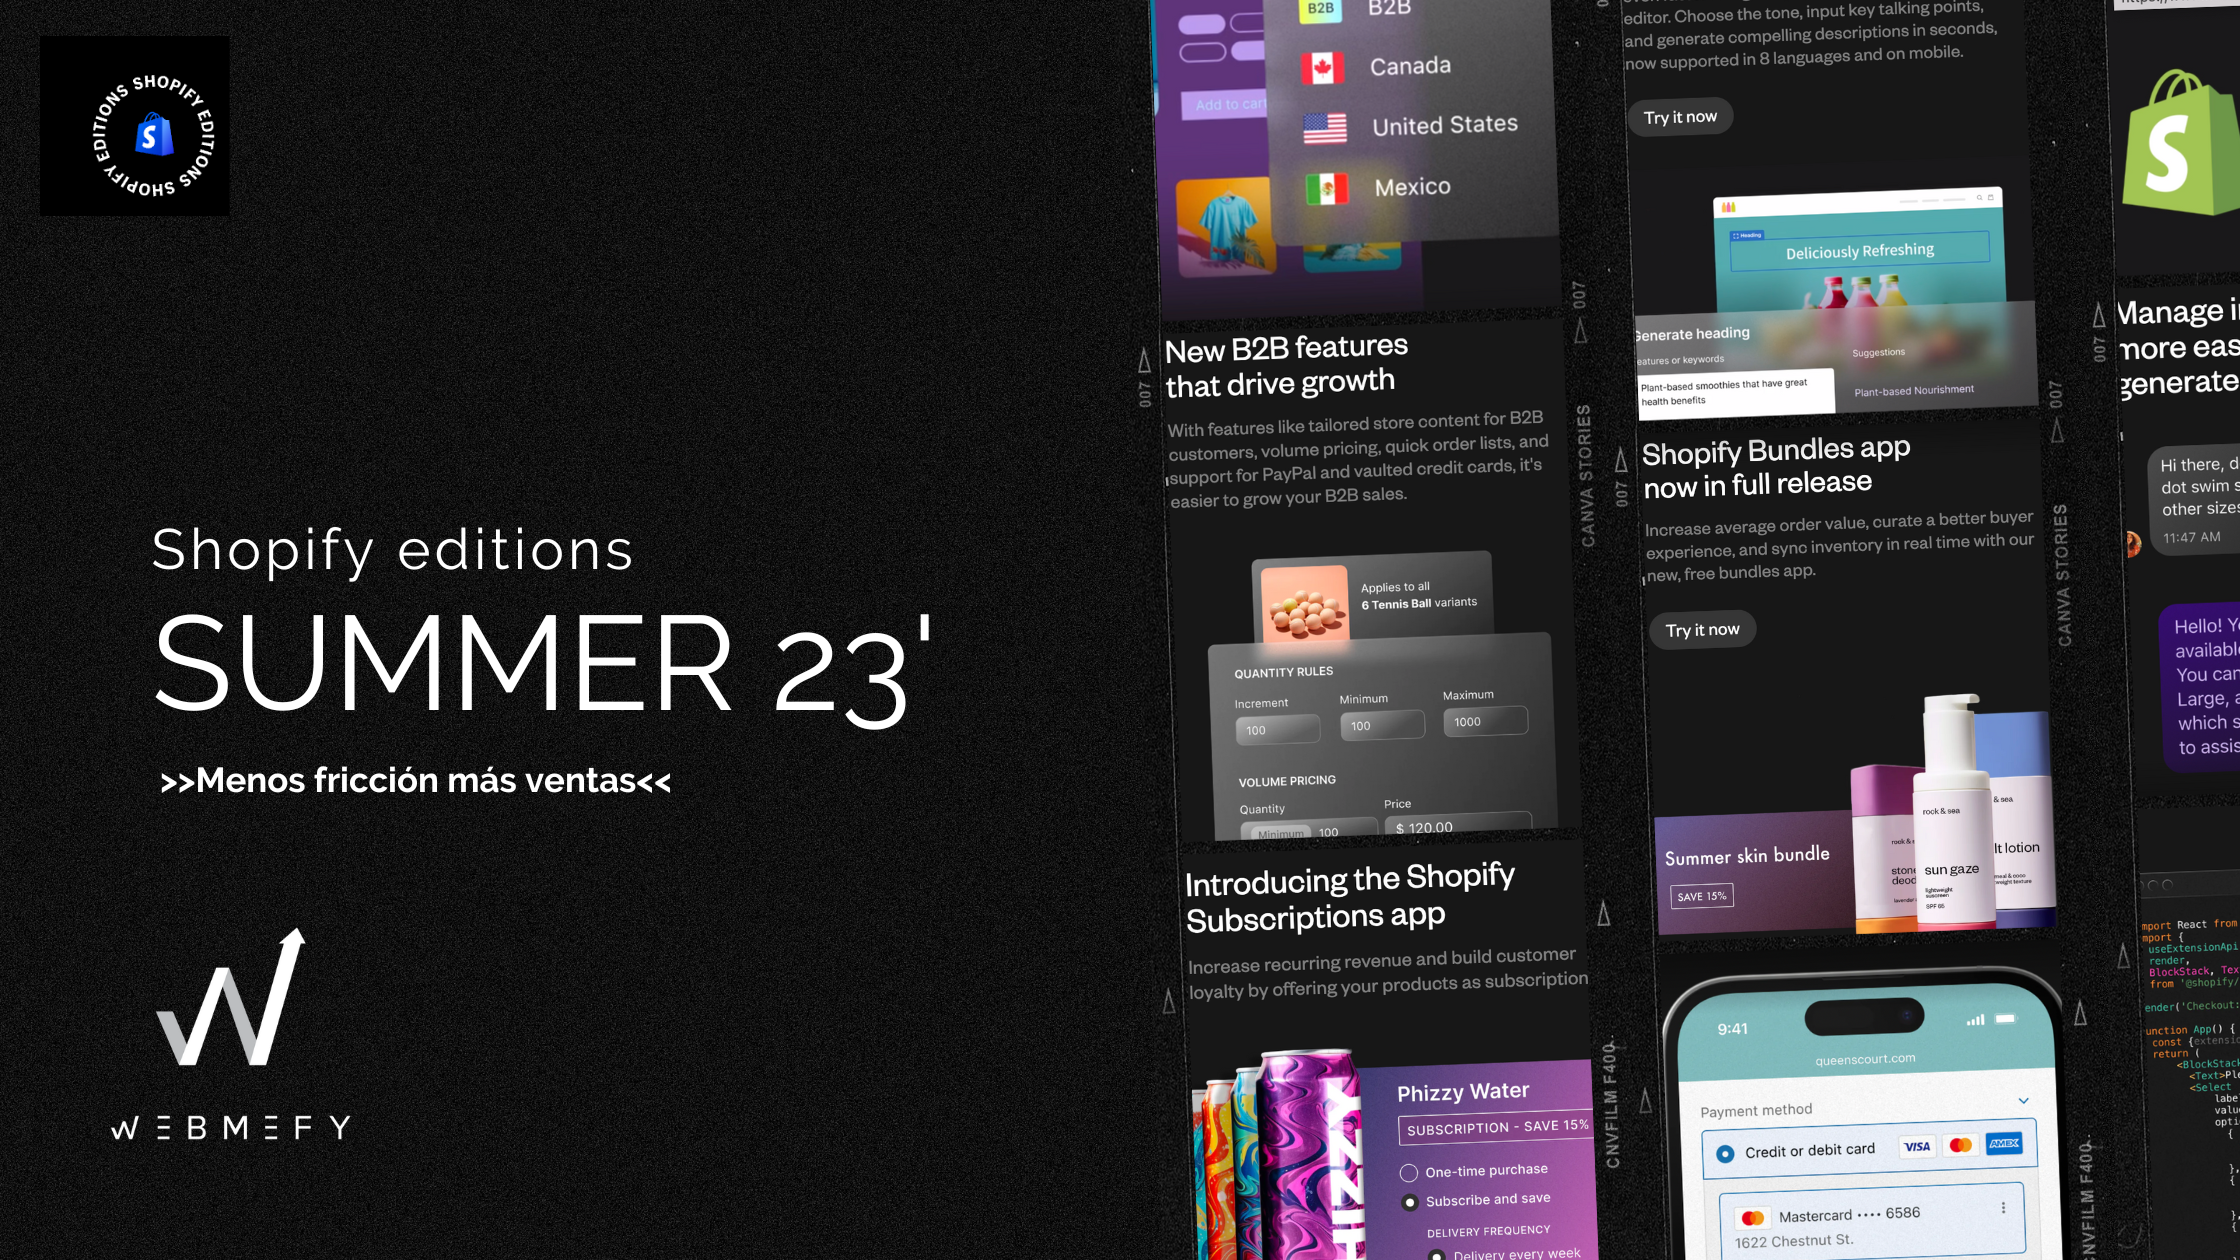 Shopify editions summer 23' resumen